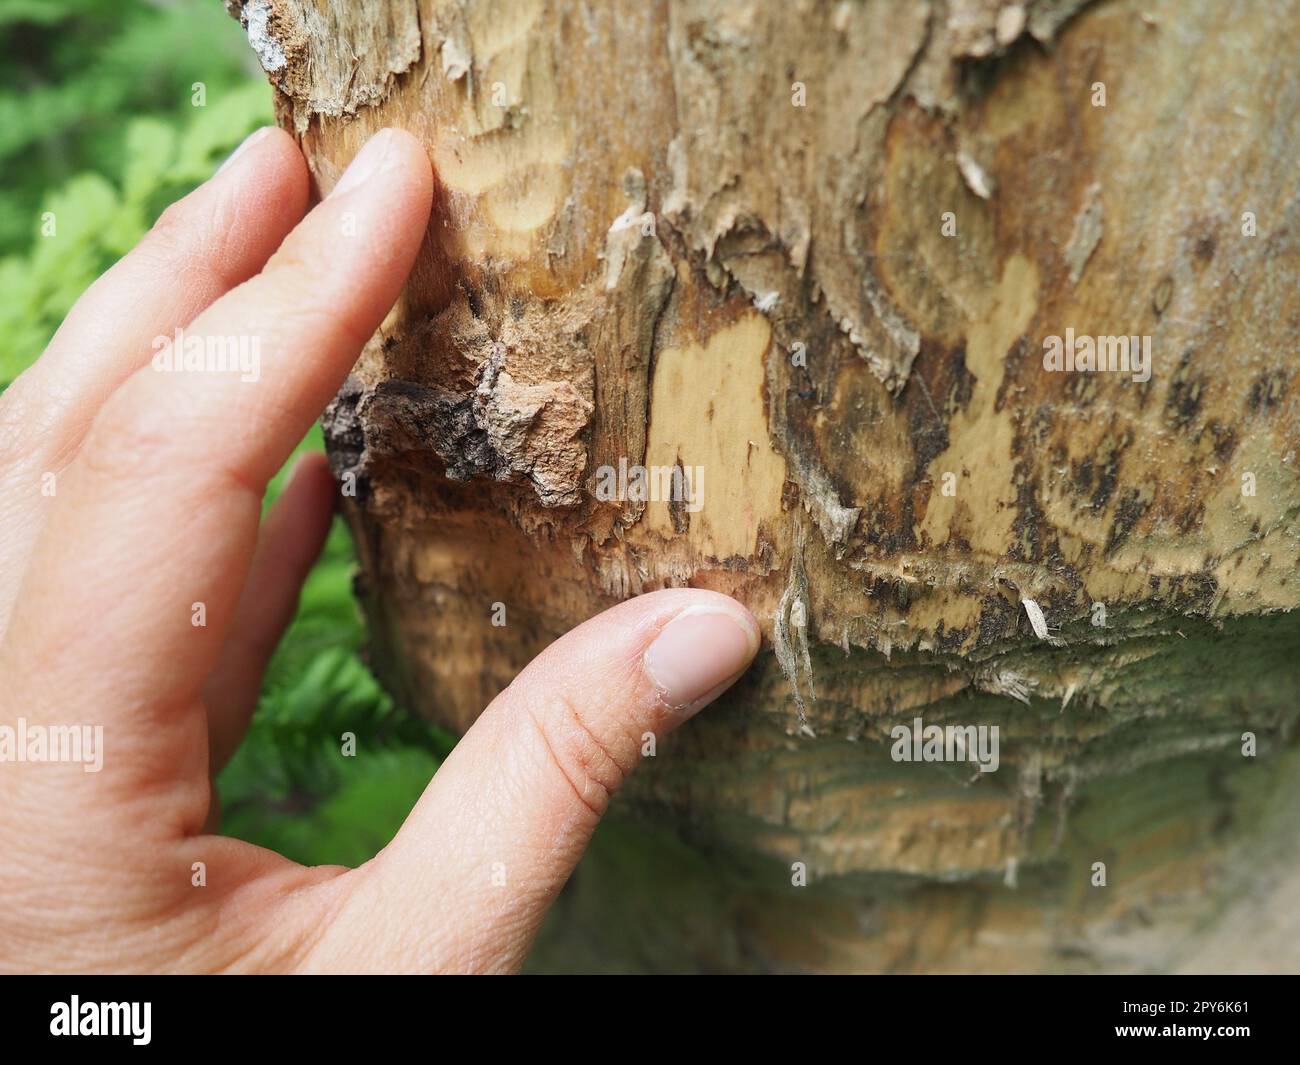 Ein Baum, der von einem Biber genagt wurde. Beschädigte Rinde und beschädigtes Holz. Die Arbeit eines Bibers für den Bau eines Dammes. Taiga, Karelien. Jagen und Angeln. Vitalaktivität forsteuropäischer Tiere. Frauenhand. Stockfoto